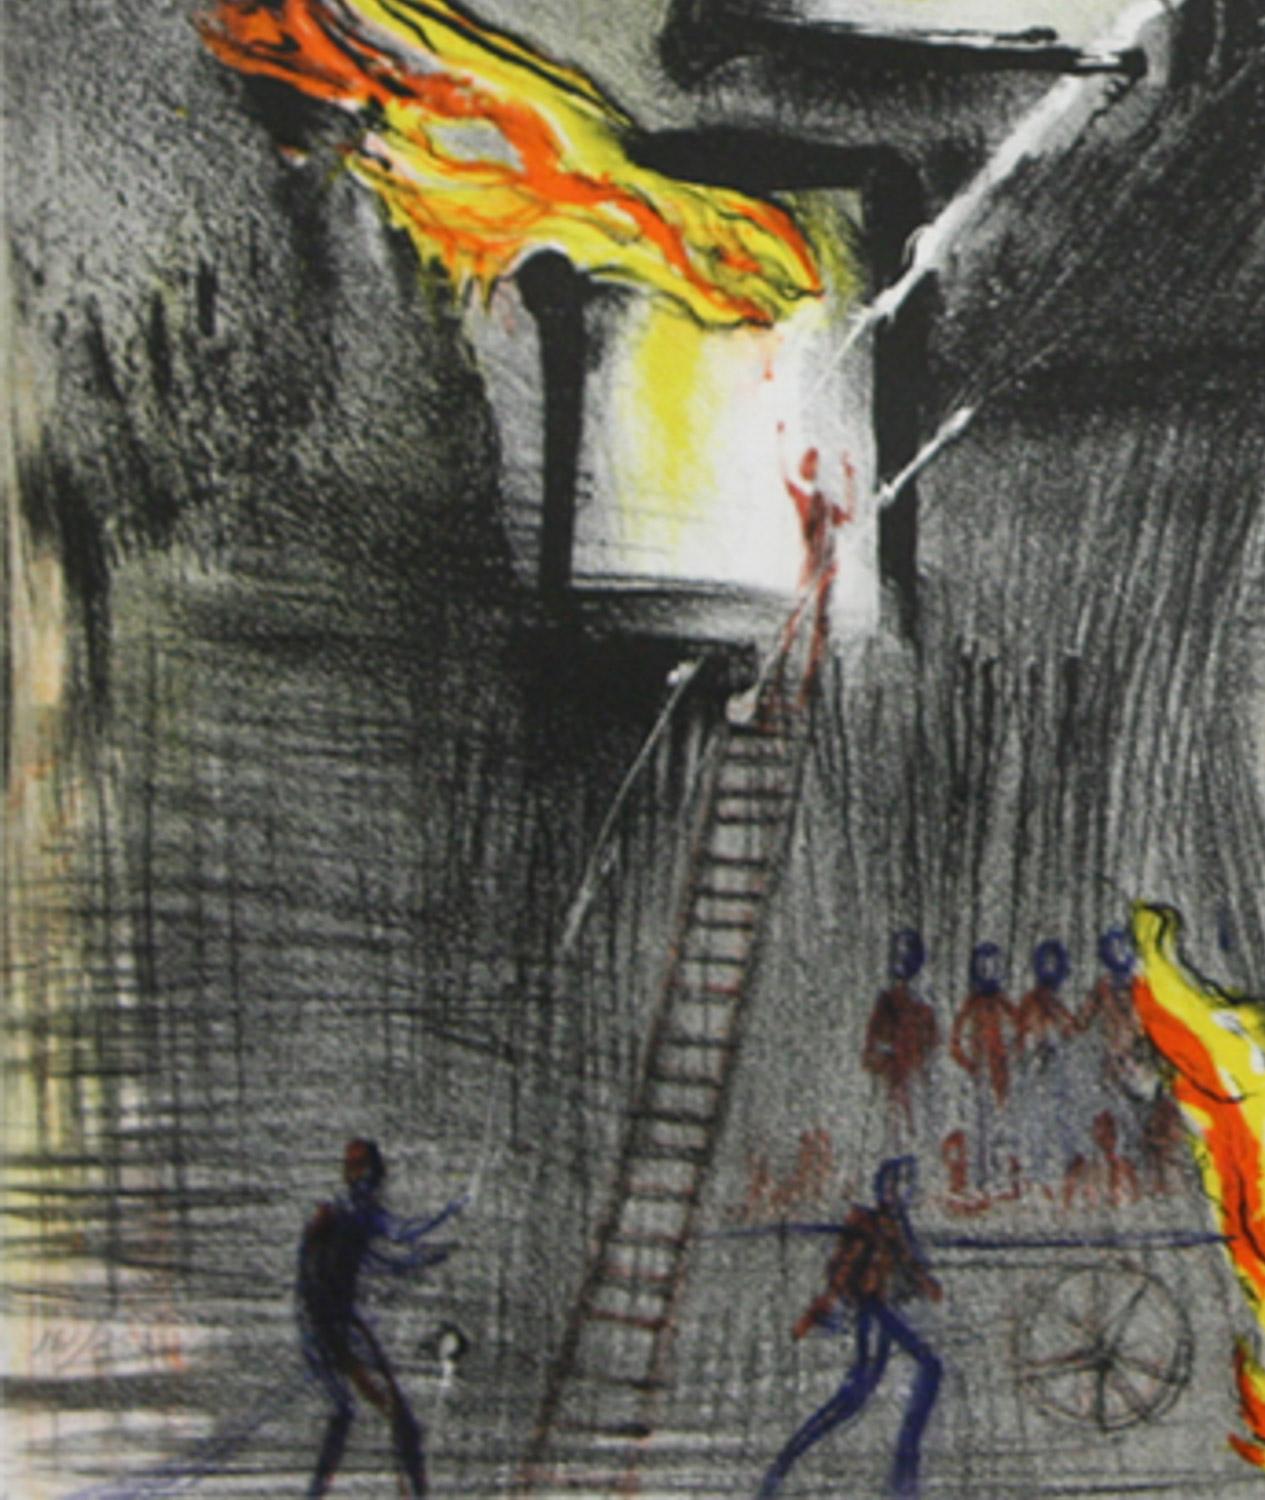 Fire, Fire The World of Currier & Ives (Le monde de Currier & Ives) interprété par Salvador Dali - Surréalisme Print par Salvador Dalí